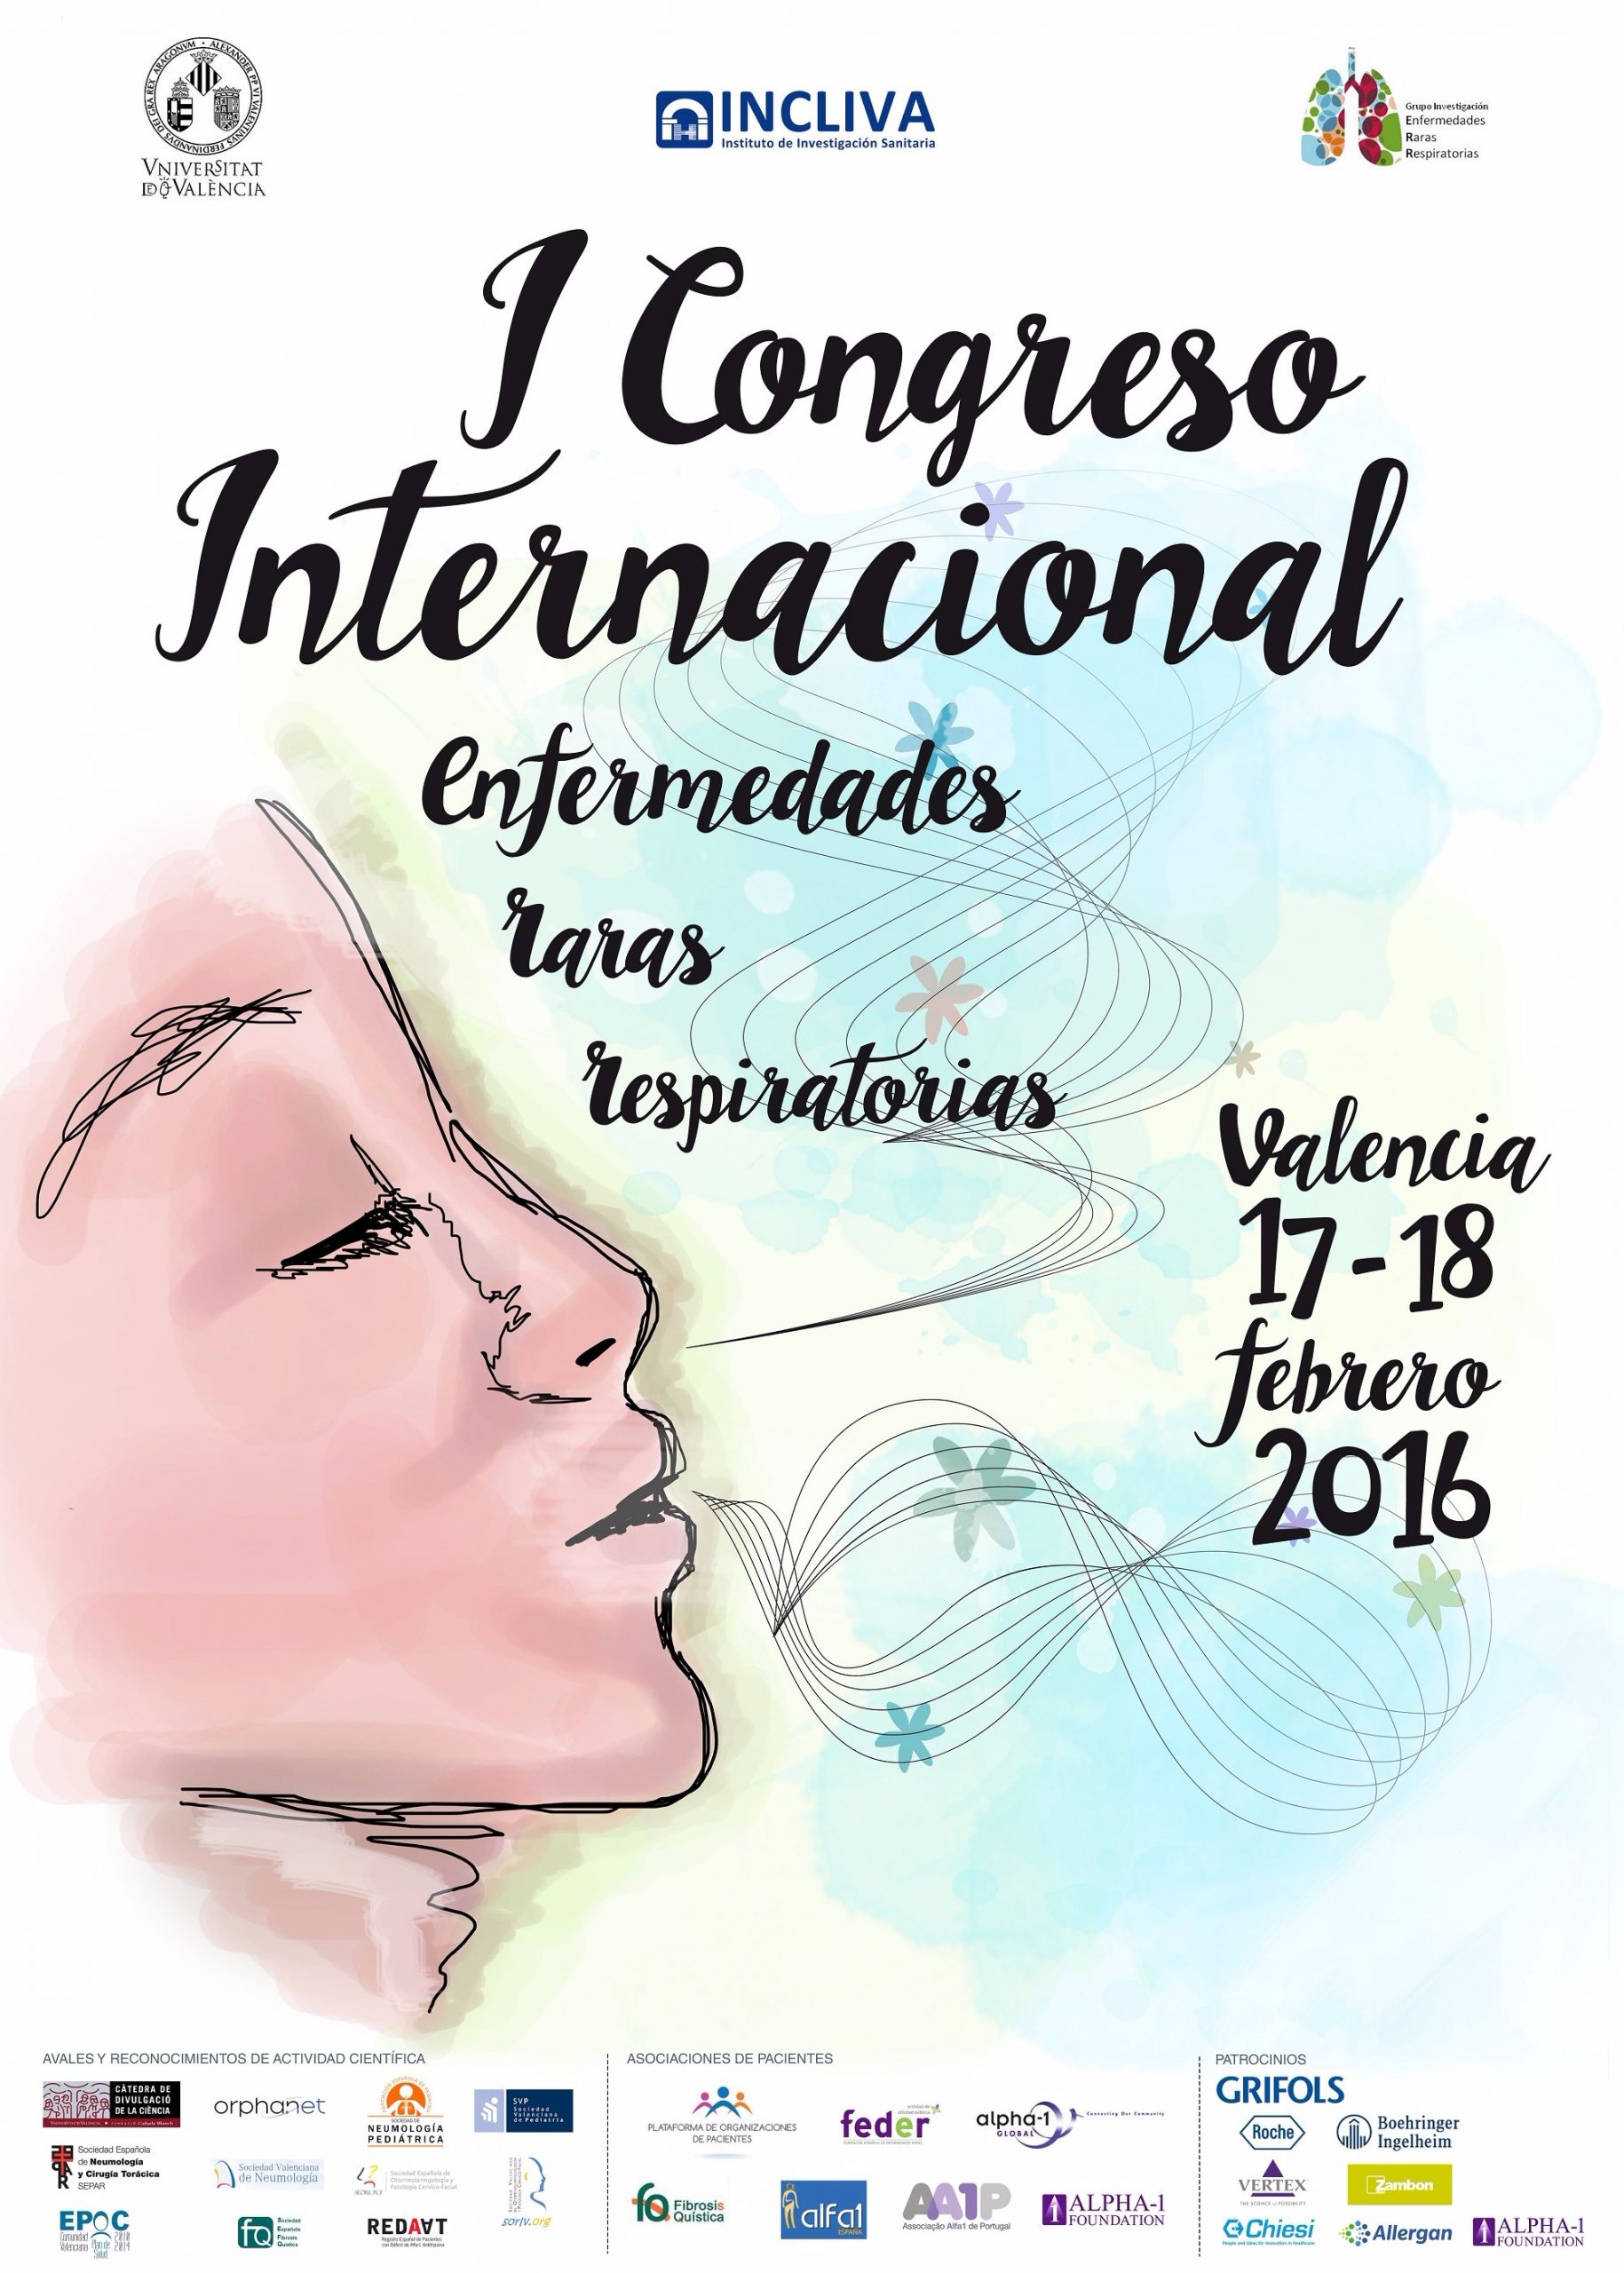 federacion española fibrosis quistica los dias 17 y 18 de febrero se celebra en valencia el i congreso internacional de enfermedades raras respiratorias scaled